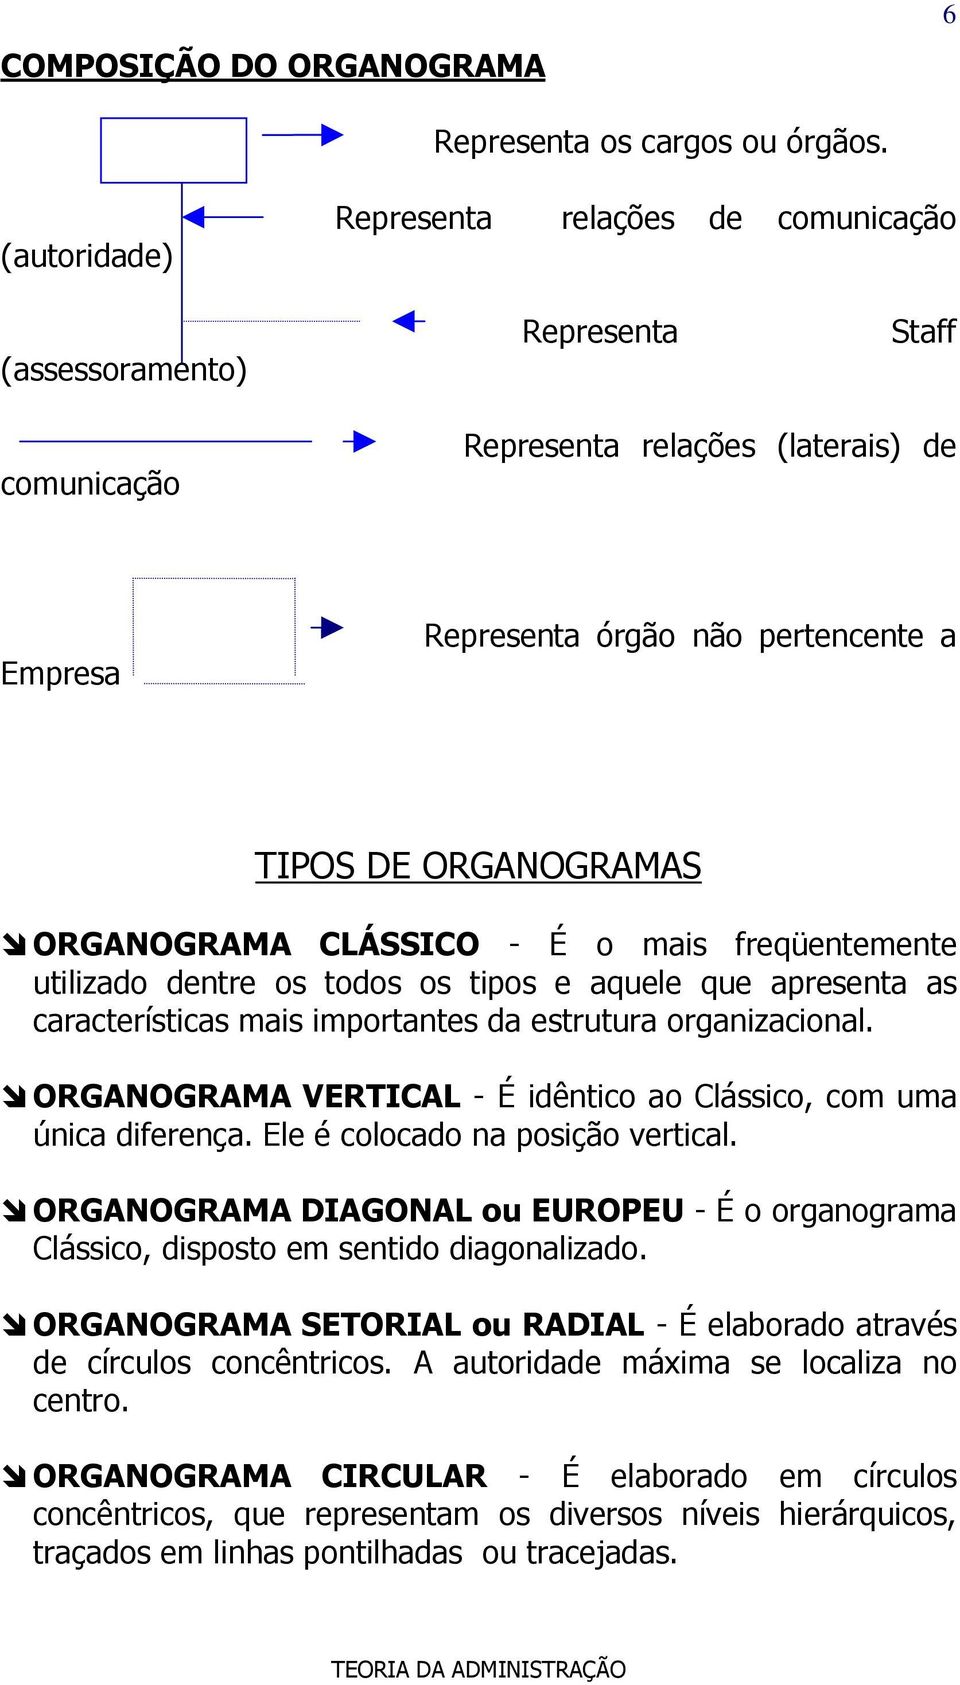 ORGANOGRAMA CLÁSSICO - É o mais freqüentemente utilizado dentre os todos os tipos e aquele que apresenta as características mais importantes da estrutura organizacional.